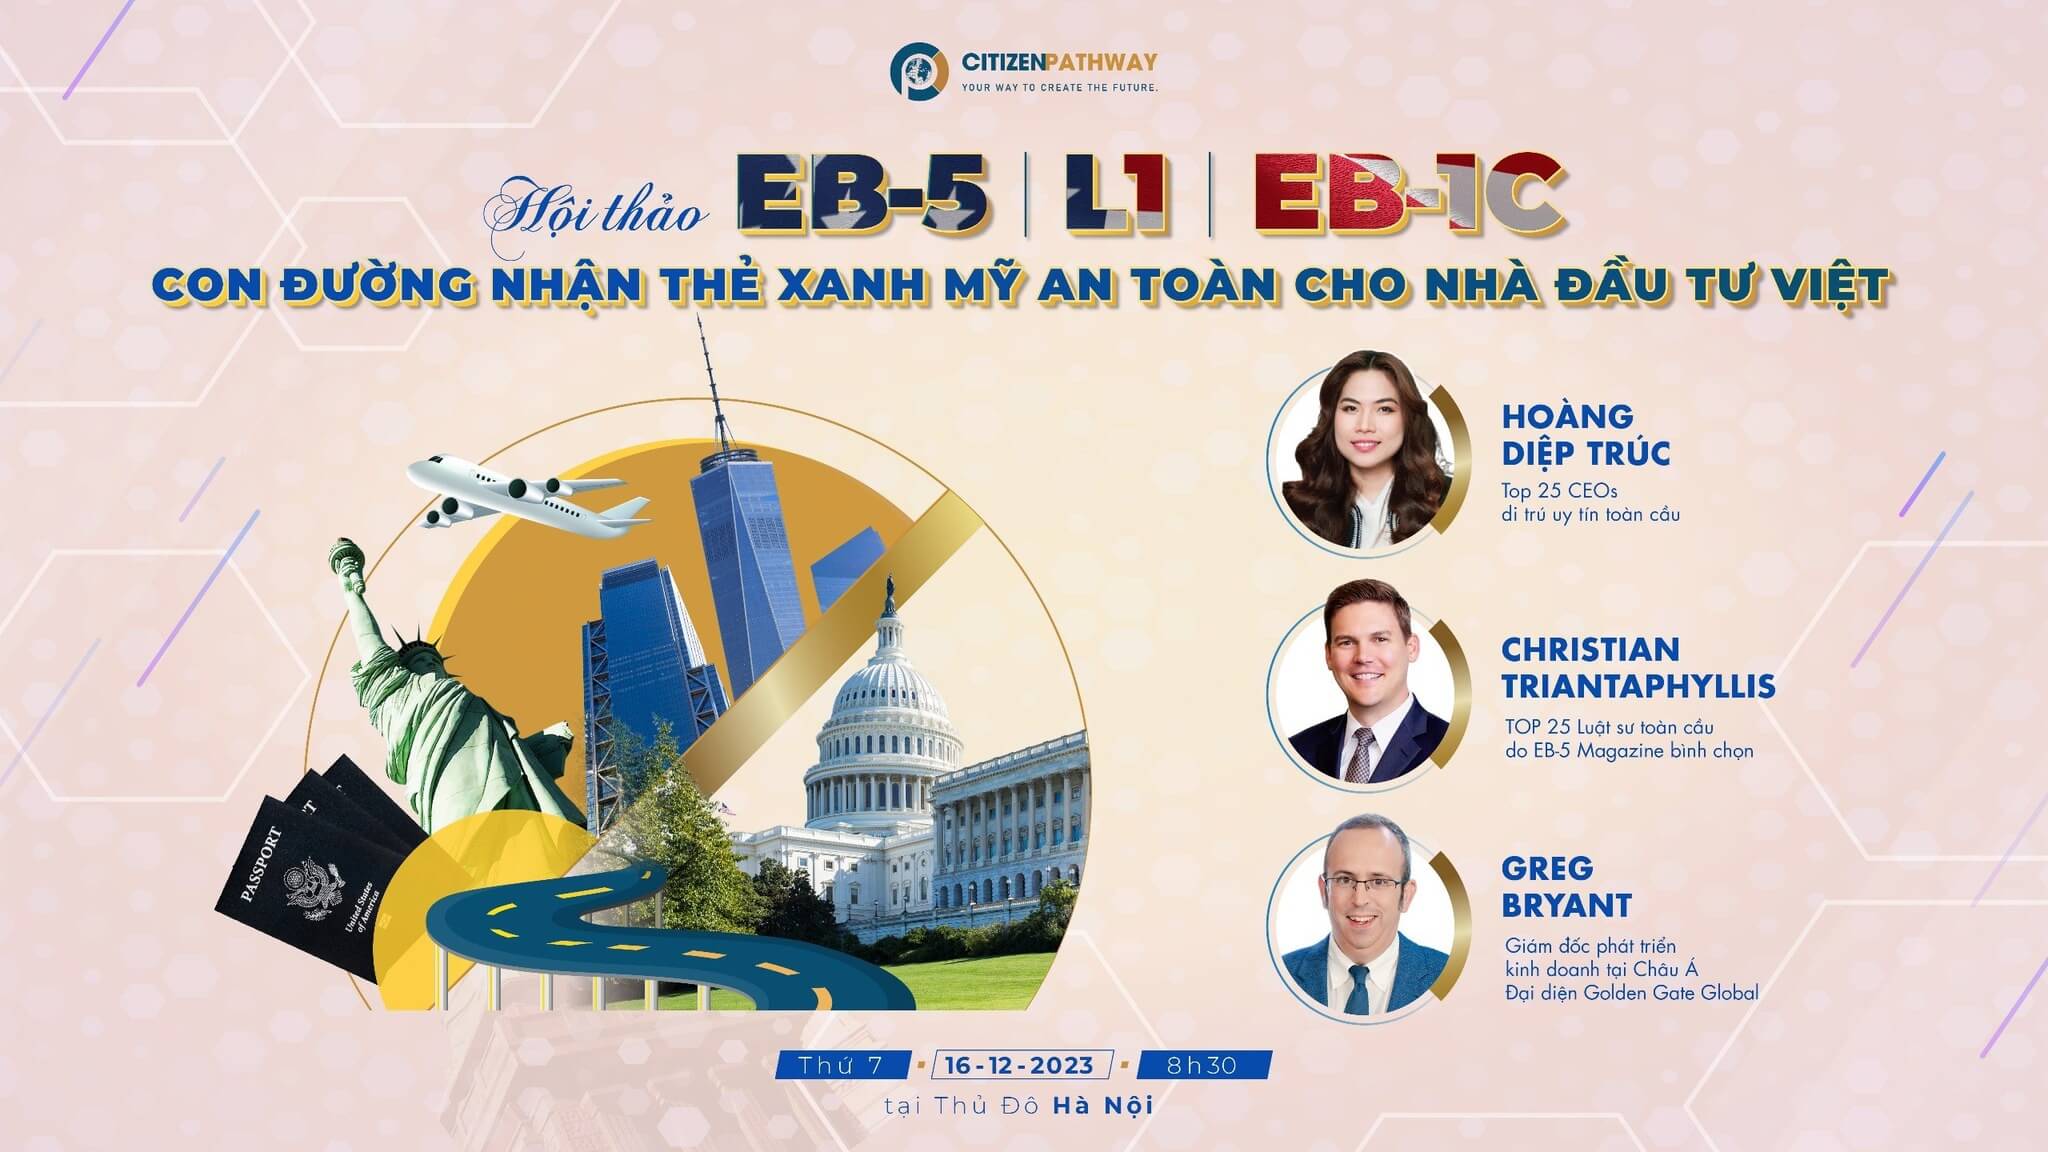 Hội thảo: EB-5 và L1/EB-1C - Con đường nhận Thẻ Xanh Mỹ an toàn cho Nhà đầu tư Việt